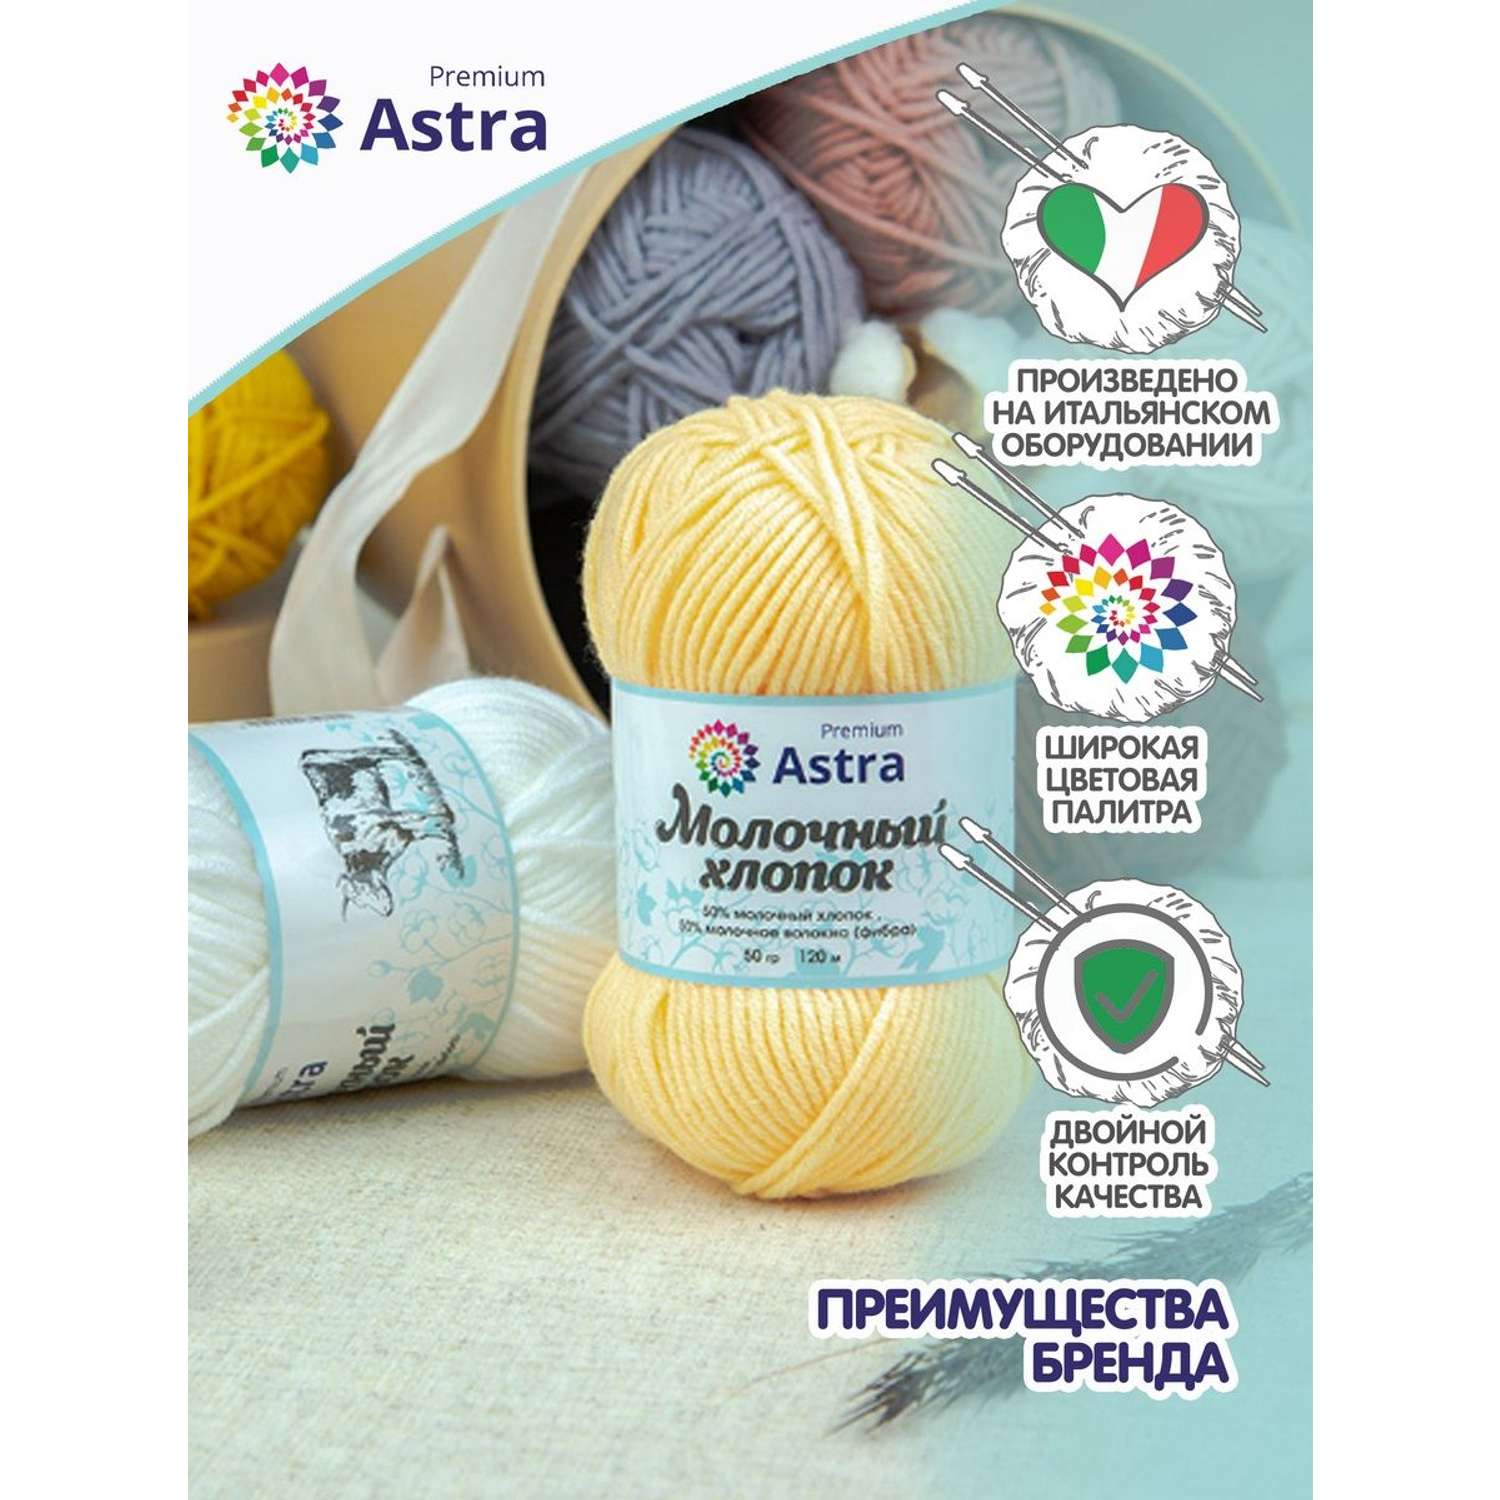 Пряжа для вязания Astra Premium milk cotton хлопок акрил 50 гр 100 м 60 синий джинсовый 3 мотка - фото 3